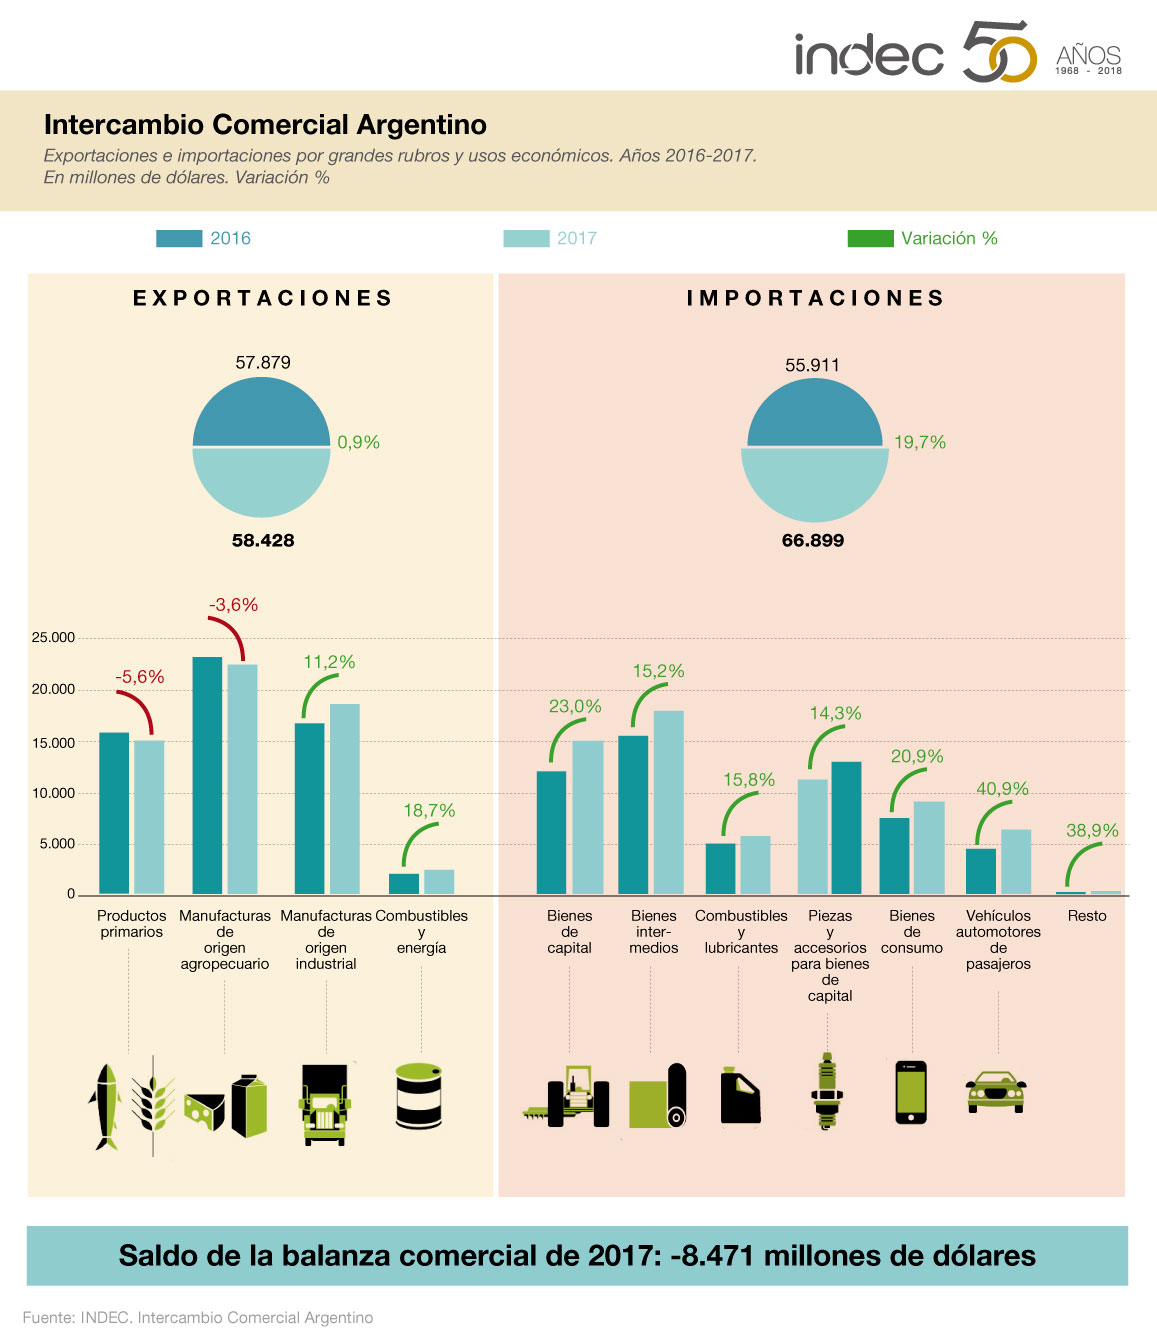 Intercambio Comercial Argentino. Exportaciones e importaciones por grandes rubros y usos económicos. Años 2016-2017. Variación porcentual.